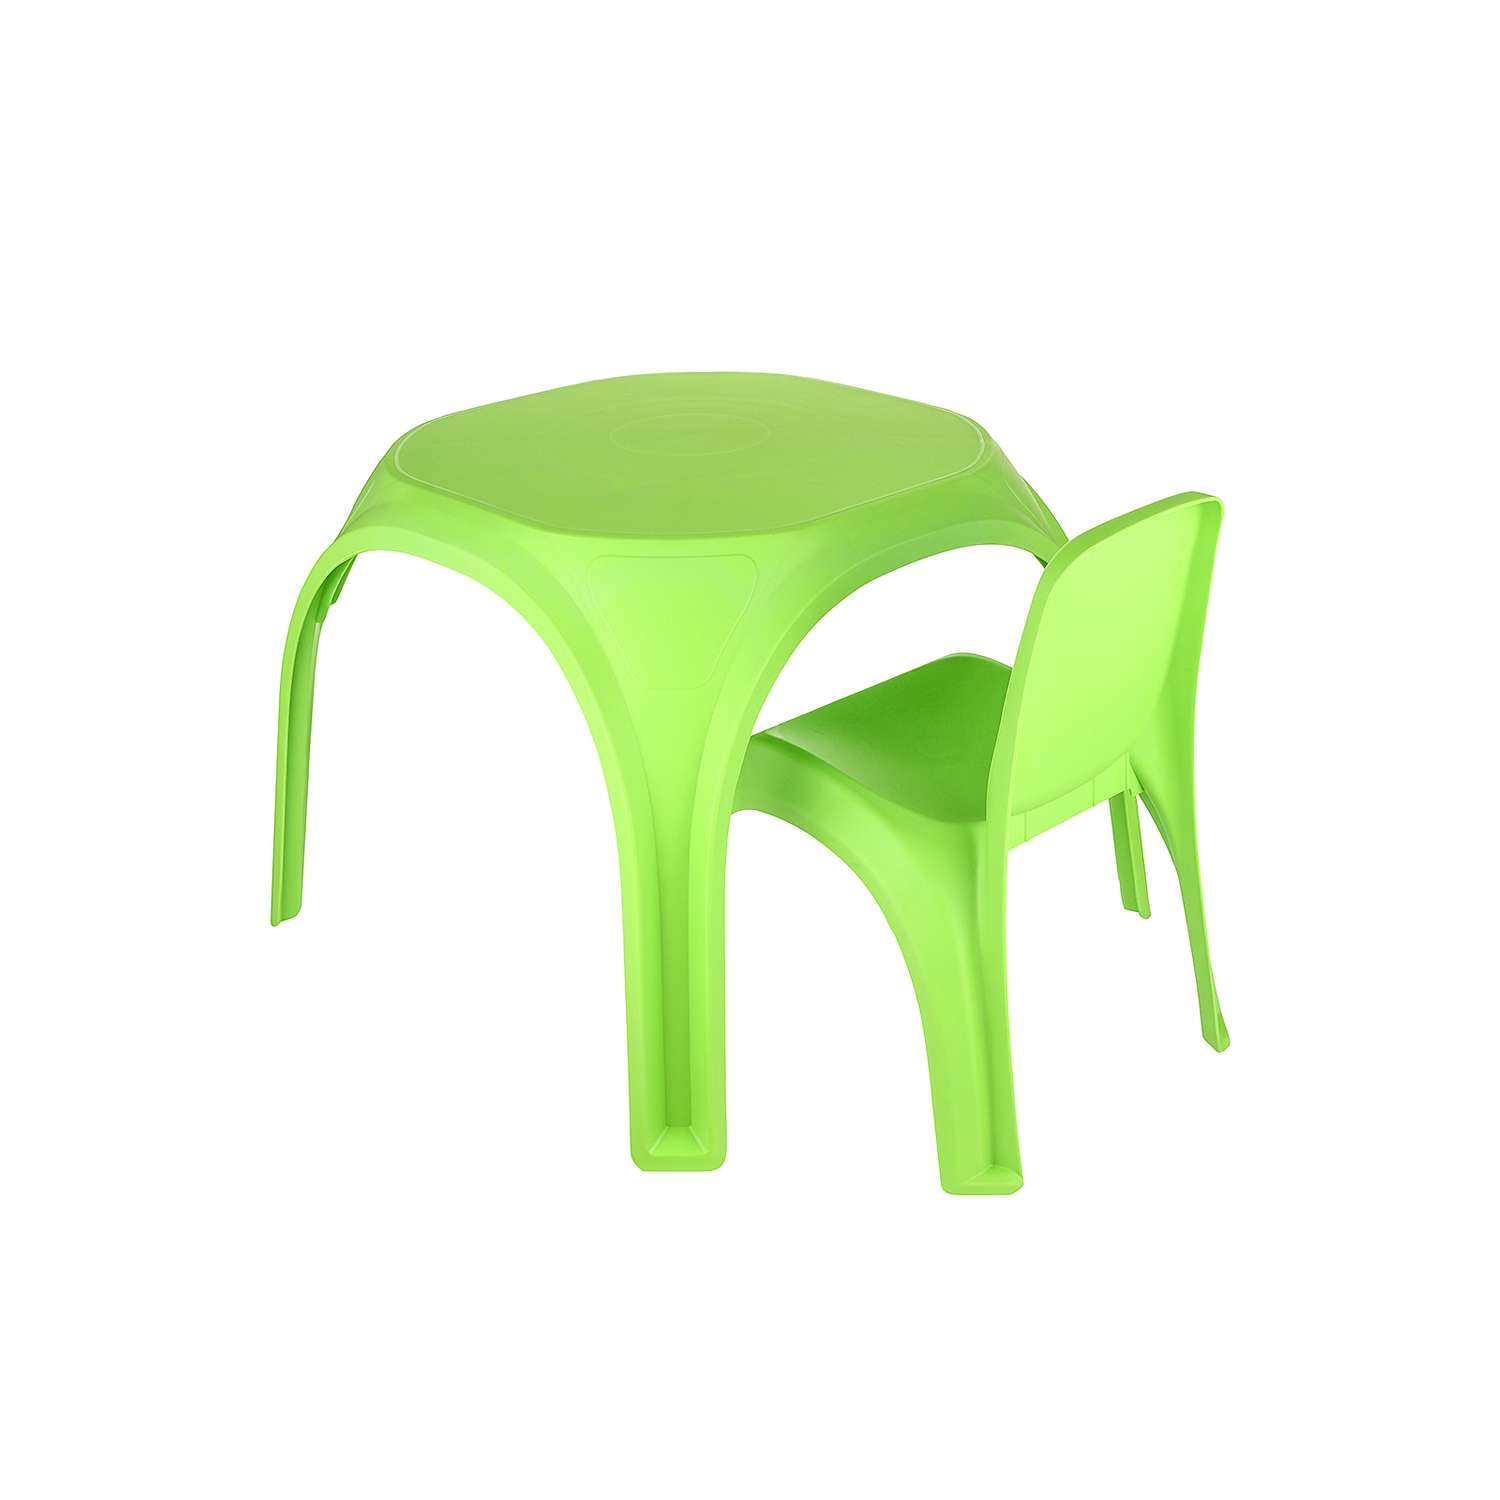 Стол десткий KETT-UP ОСЬМИНОЖКА пластиковый зеленый - фото 5